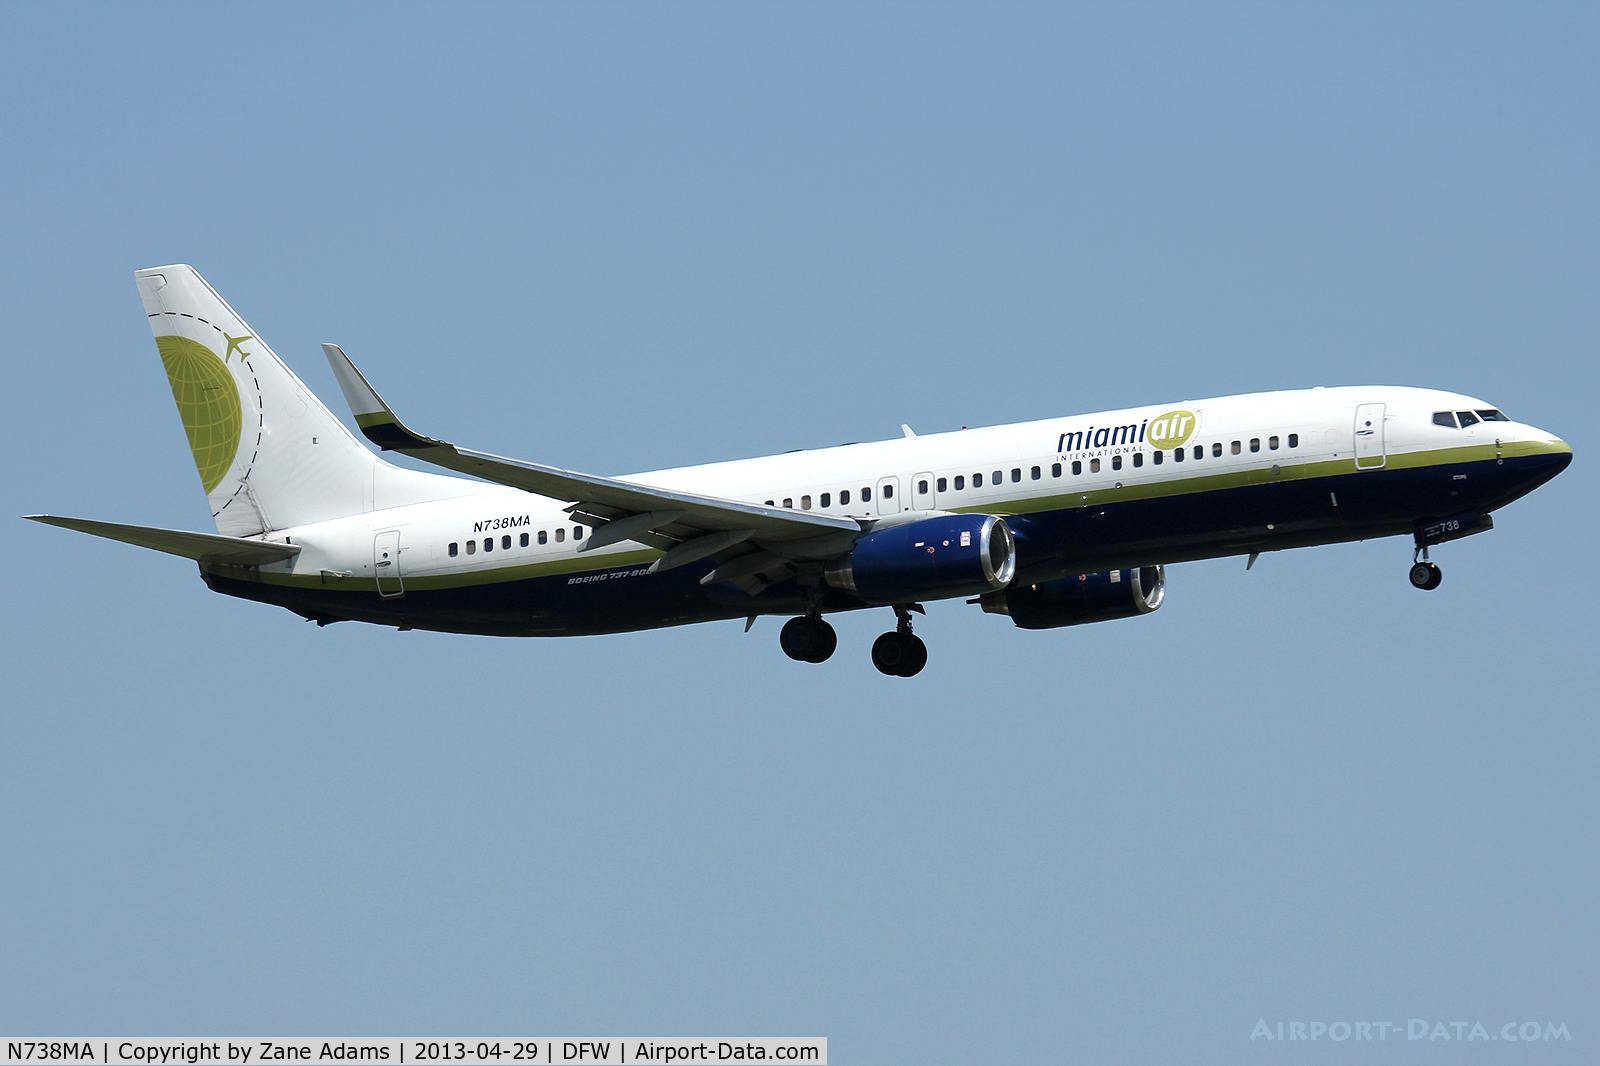 N738MA, 2004 Boeing 737-8Q8 C/N 32799, Miami Air landing at DFW Airport